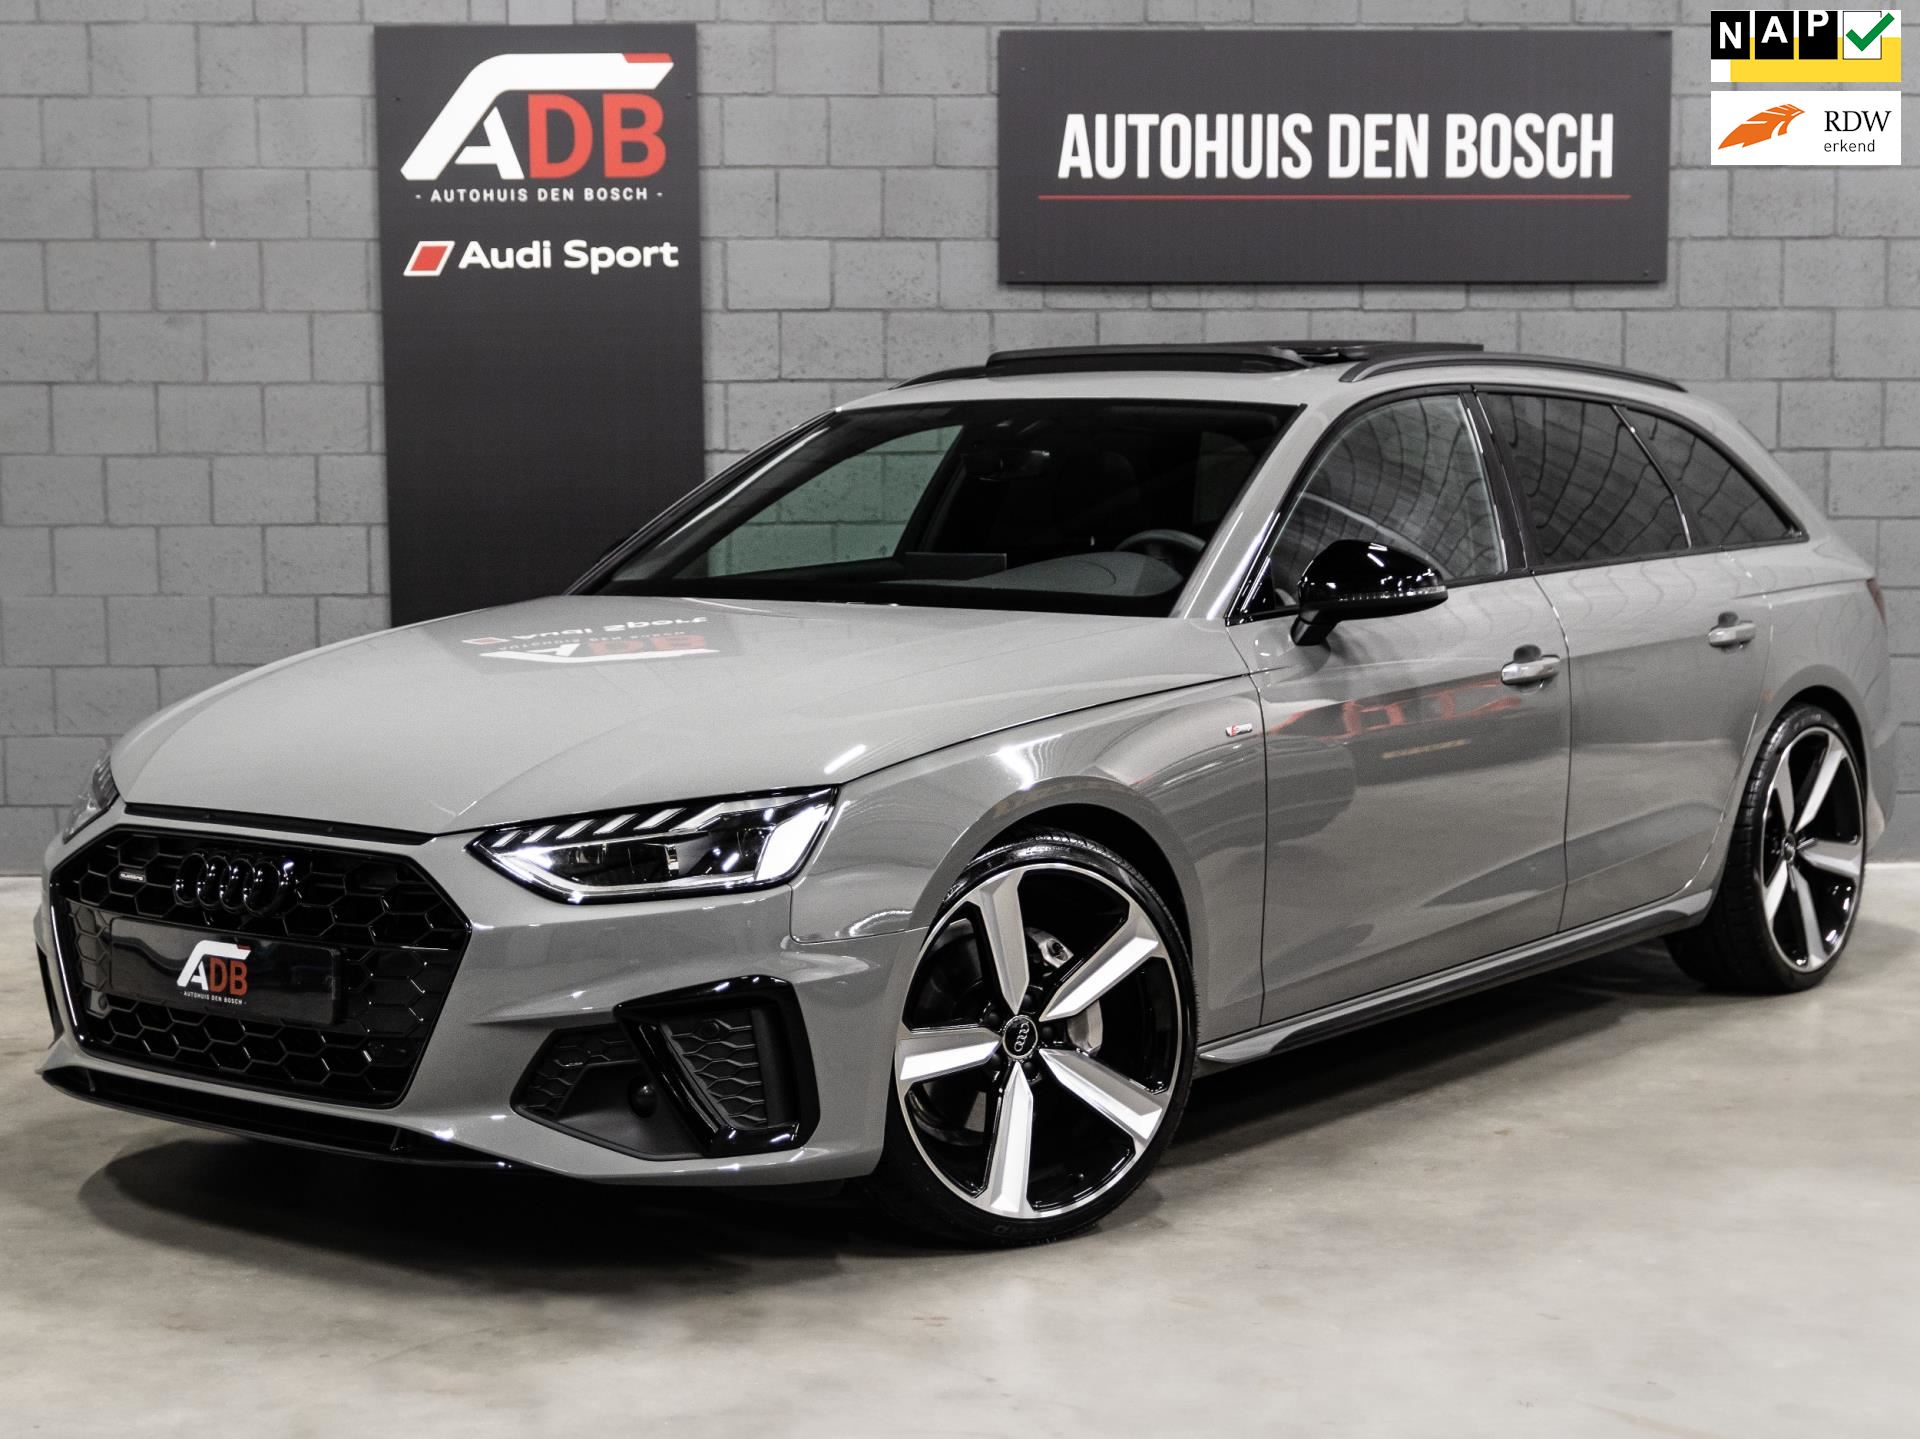 Audi A4 Avant occasion - Autohuis Den Bosch